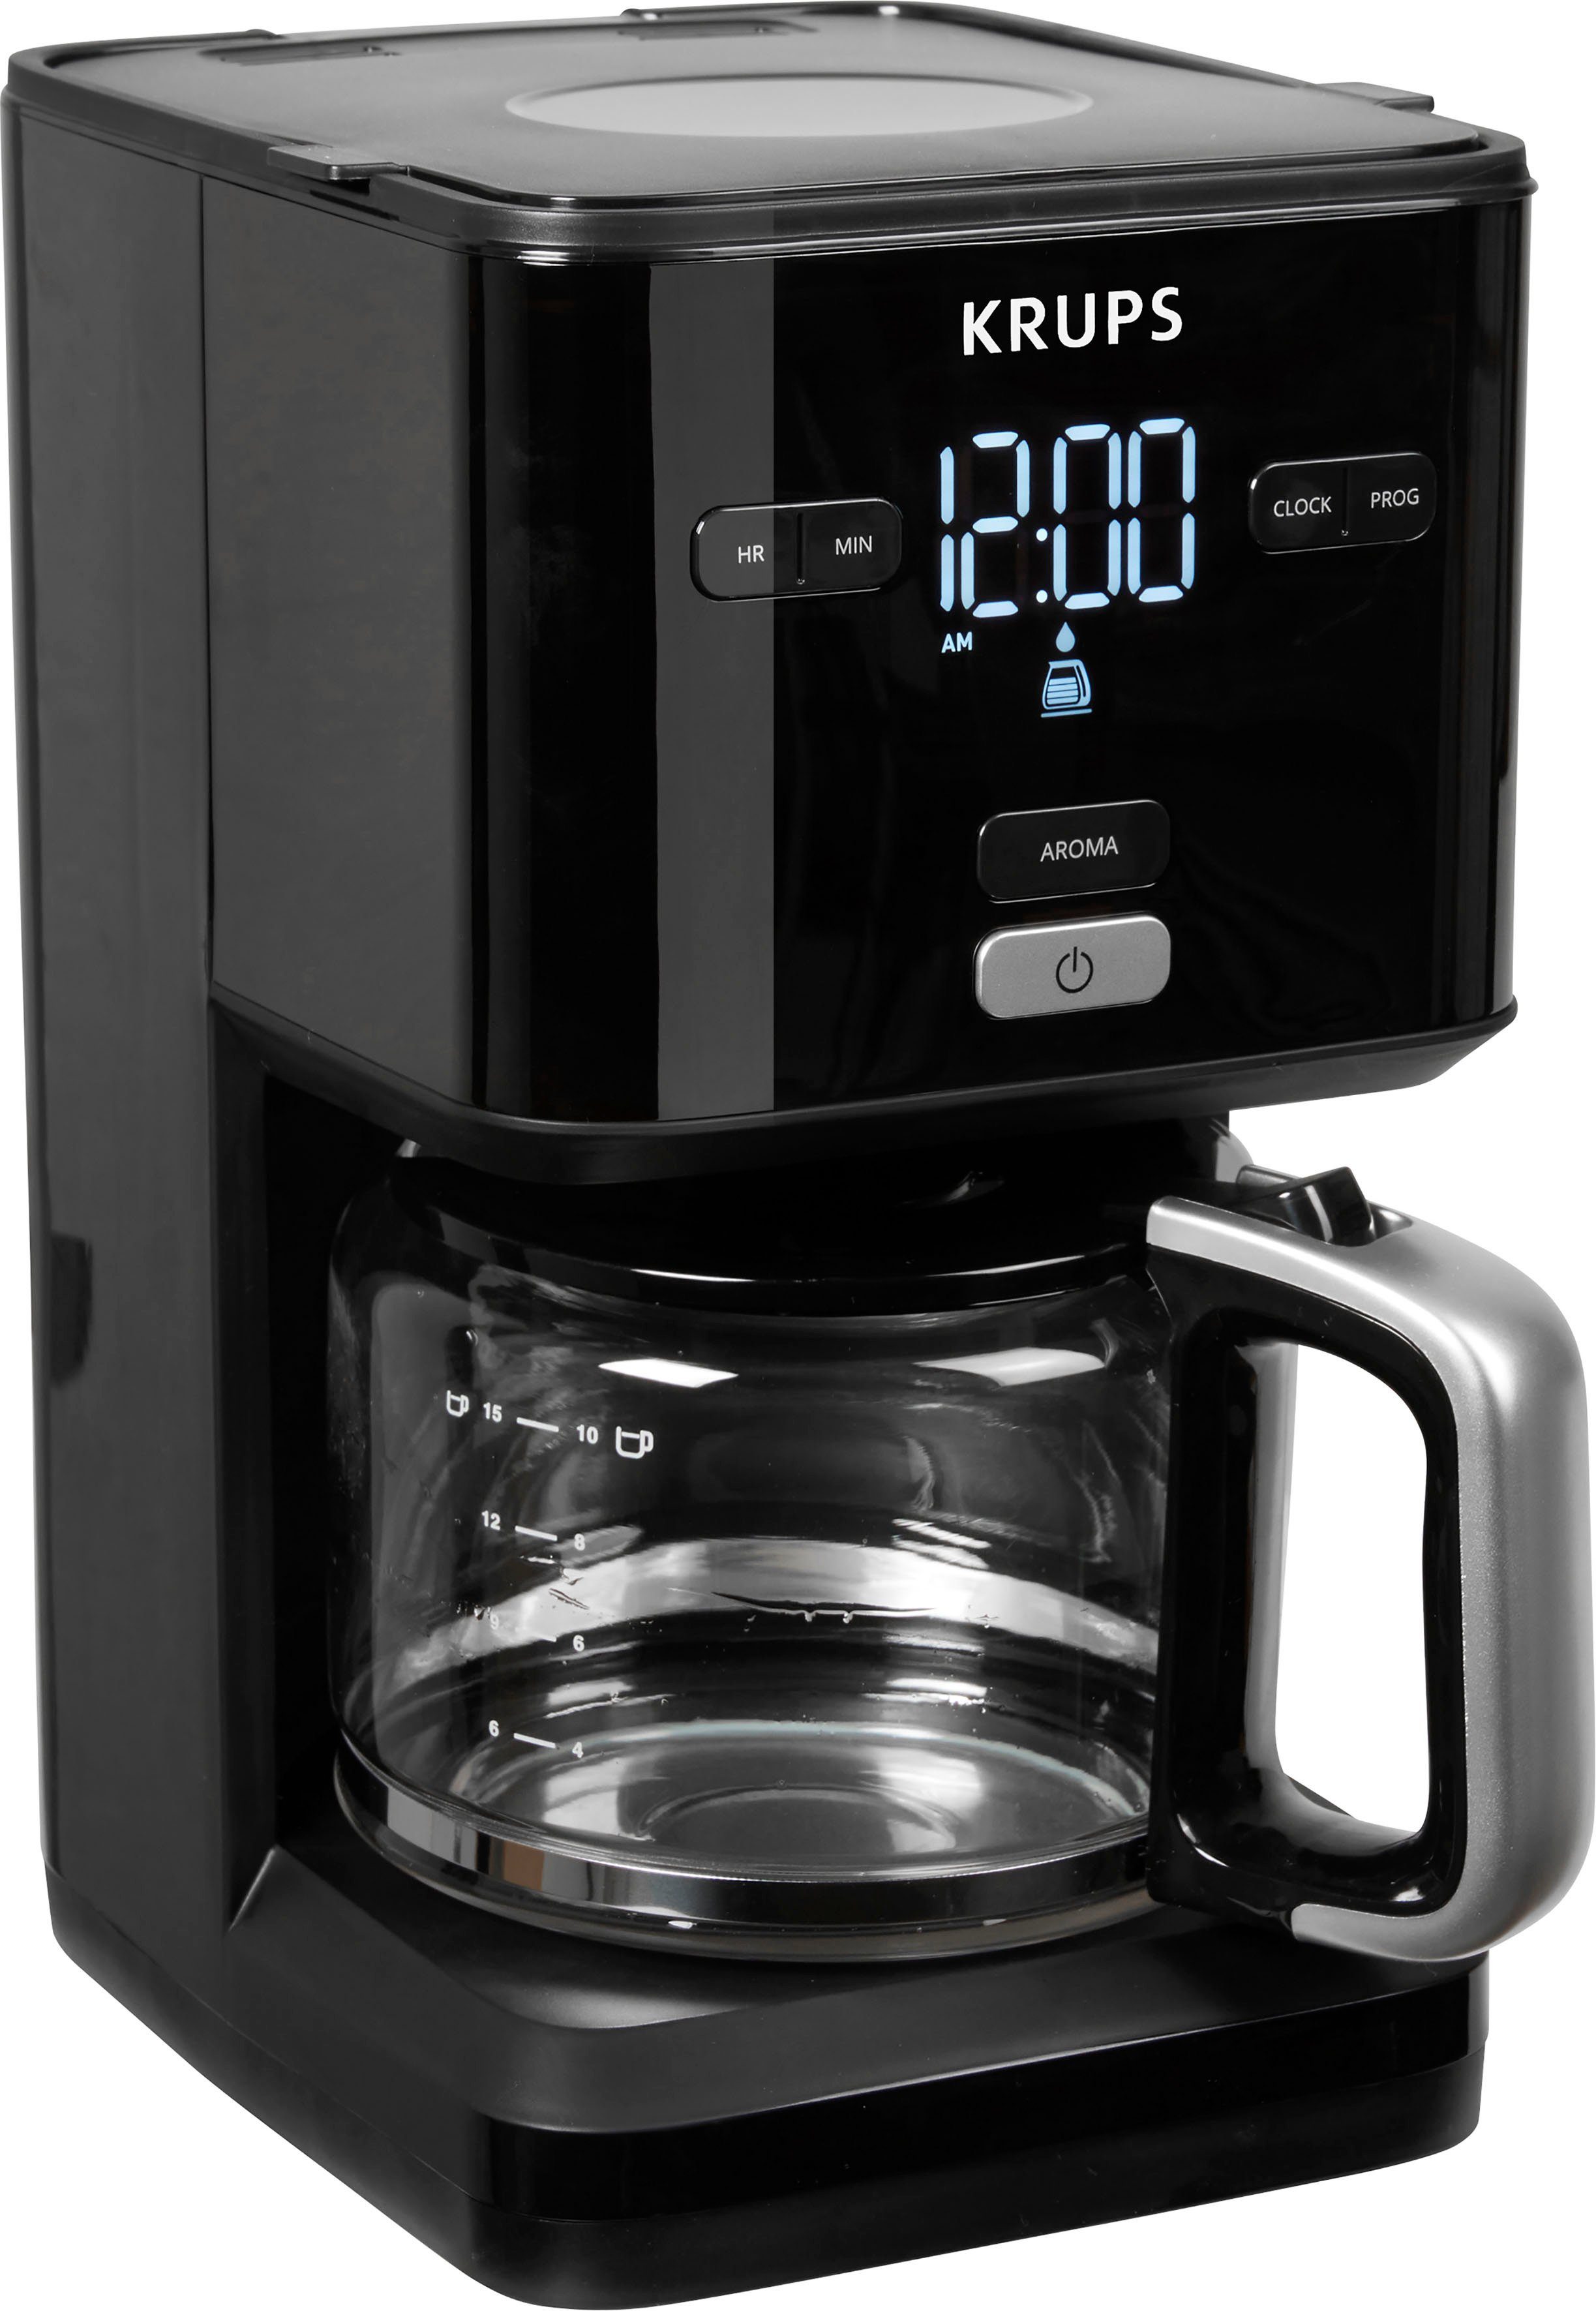 Krups Filterkaffeemaschine KM6008 Smart'n Light, 1,25l Kaffeekanne, 24-Std-Timer, automatische Abschaltung nach 30 Minuten | Filterkaffeemaschinen